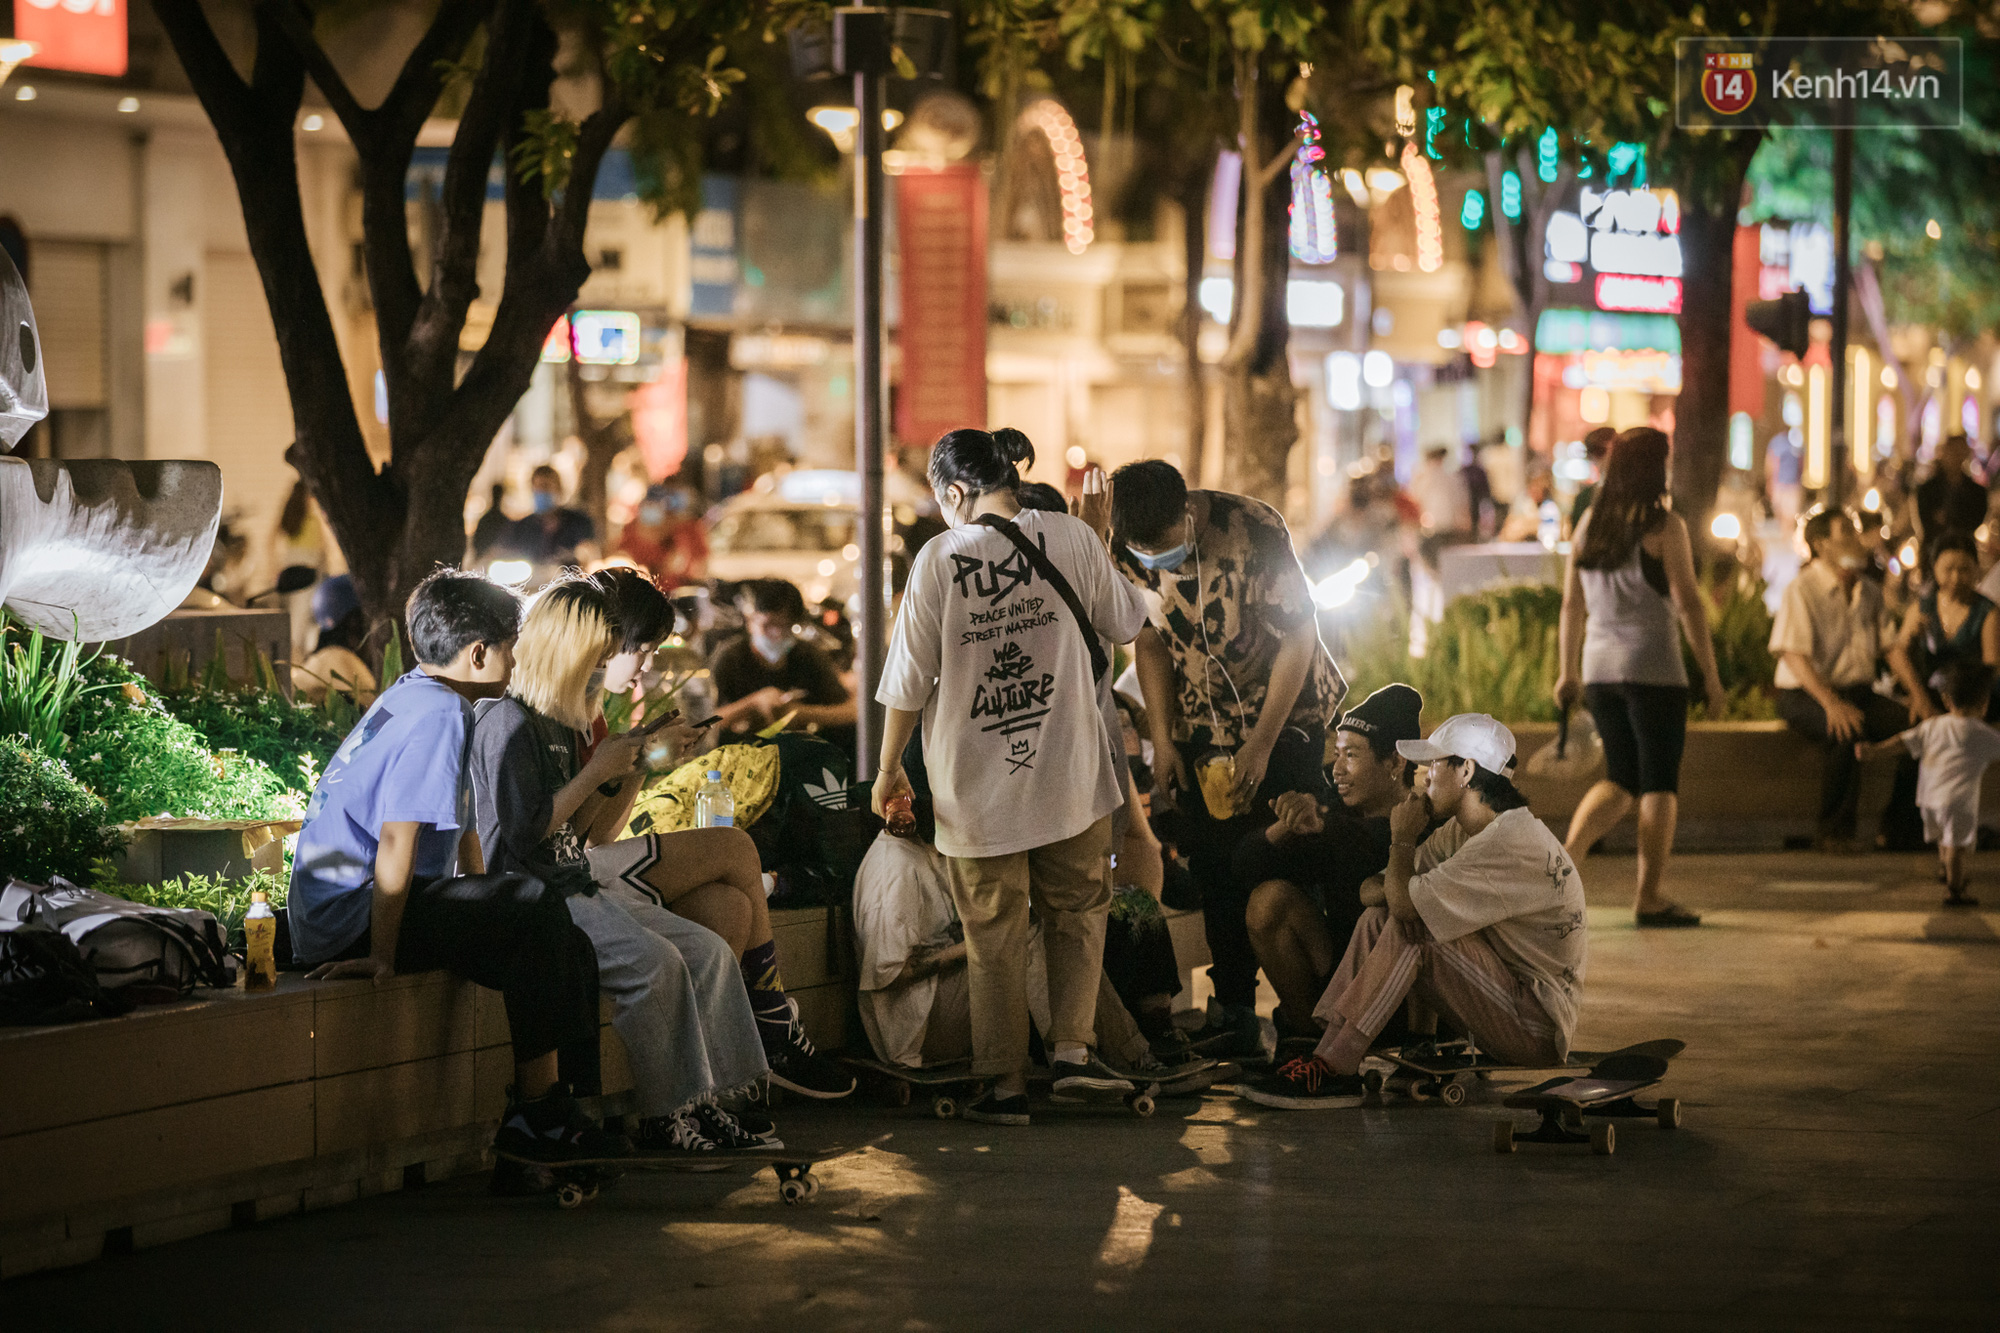 Sài Gòn nhộn nhịp trong buổi tối nghỉ lễ đầu tiên: Khu vực trung tâm dần trở nên đông đúc, nhiều người lo sợ vẫn “kè kè” chiếc khẩu trang bên mình - Ảnh 8.